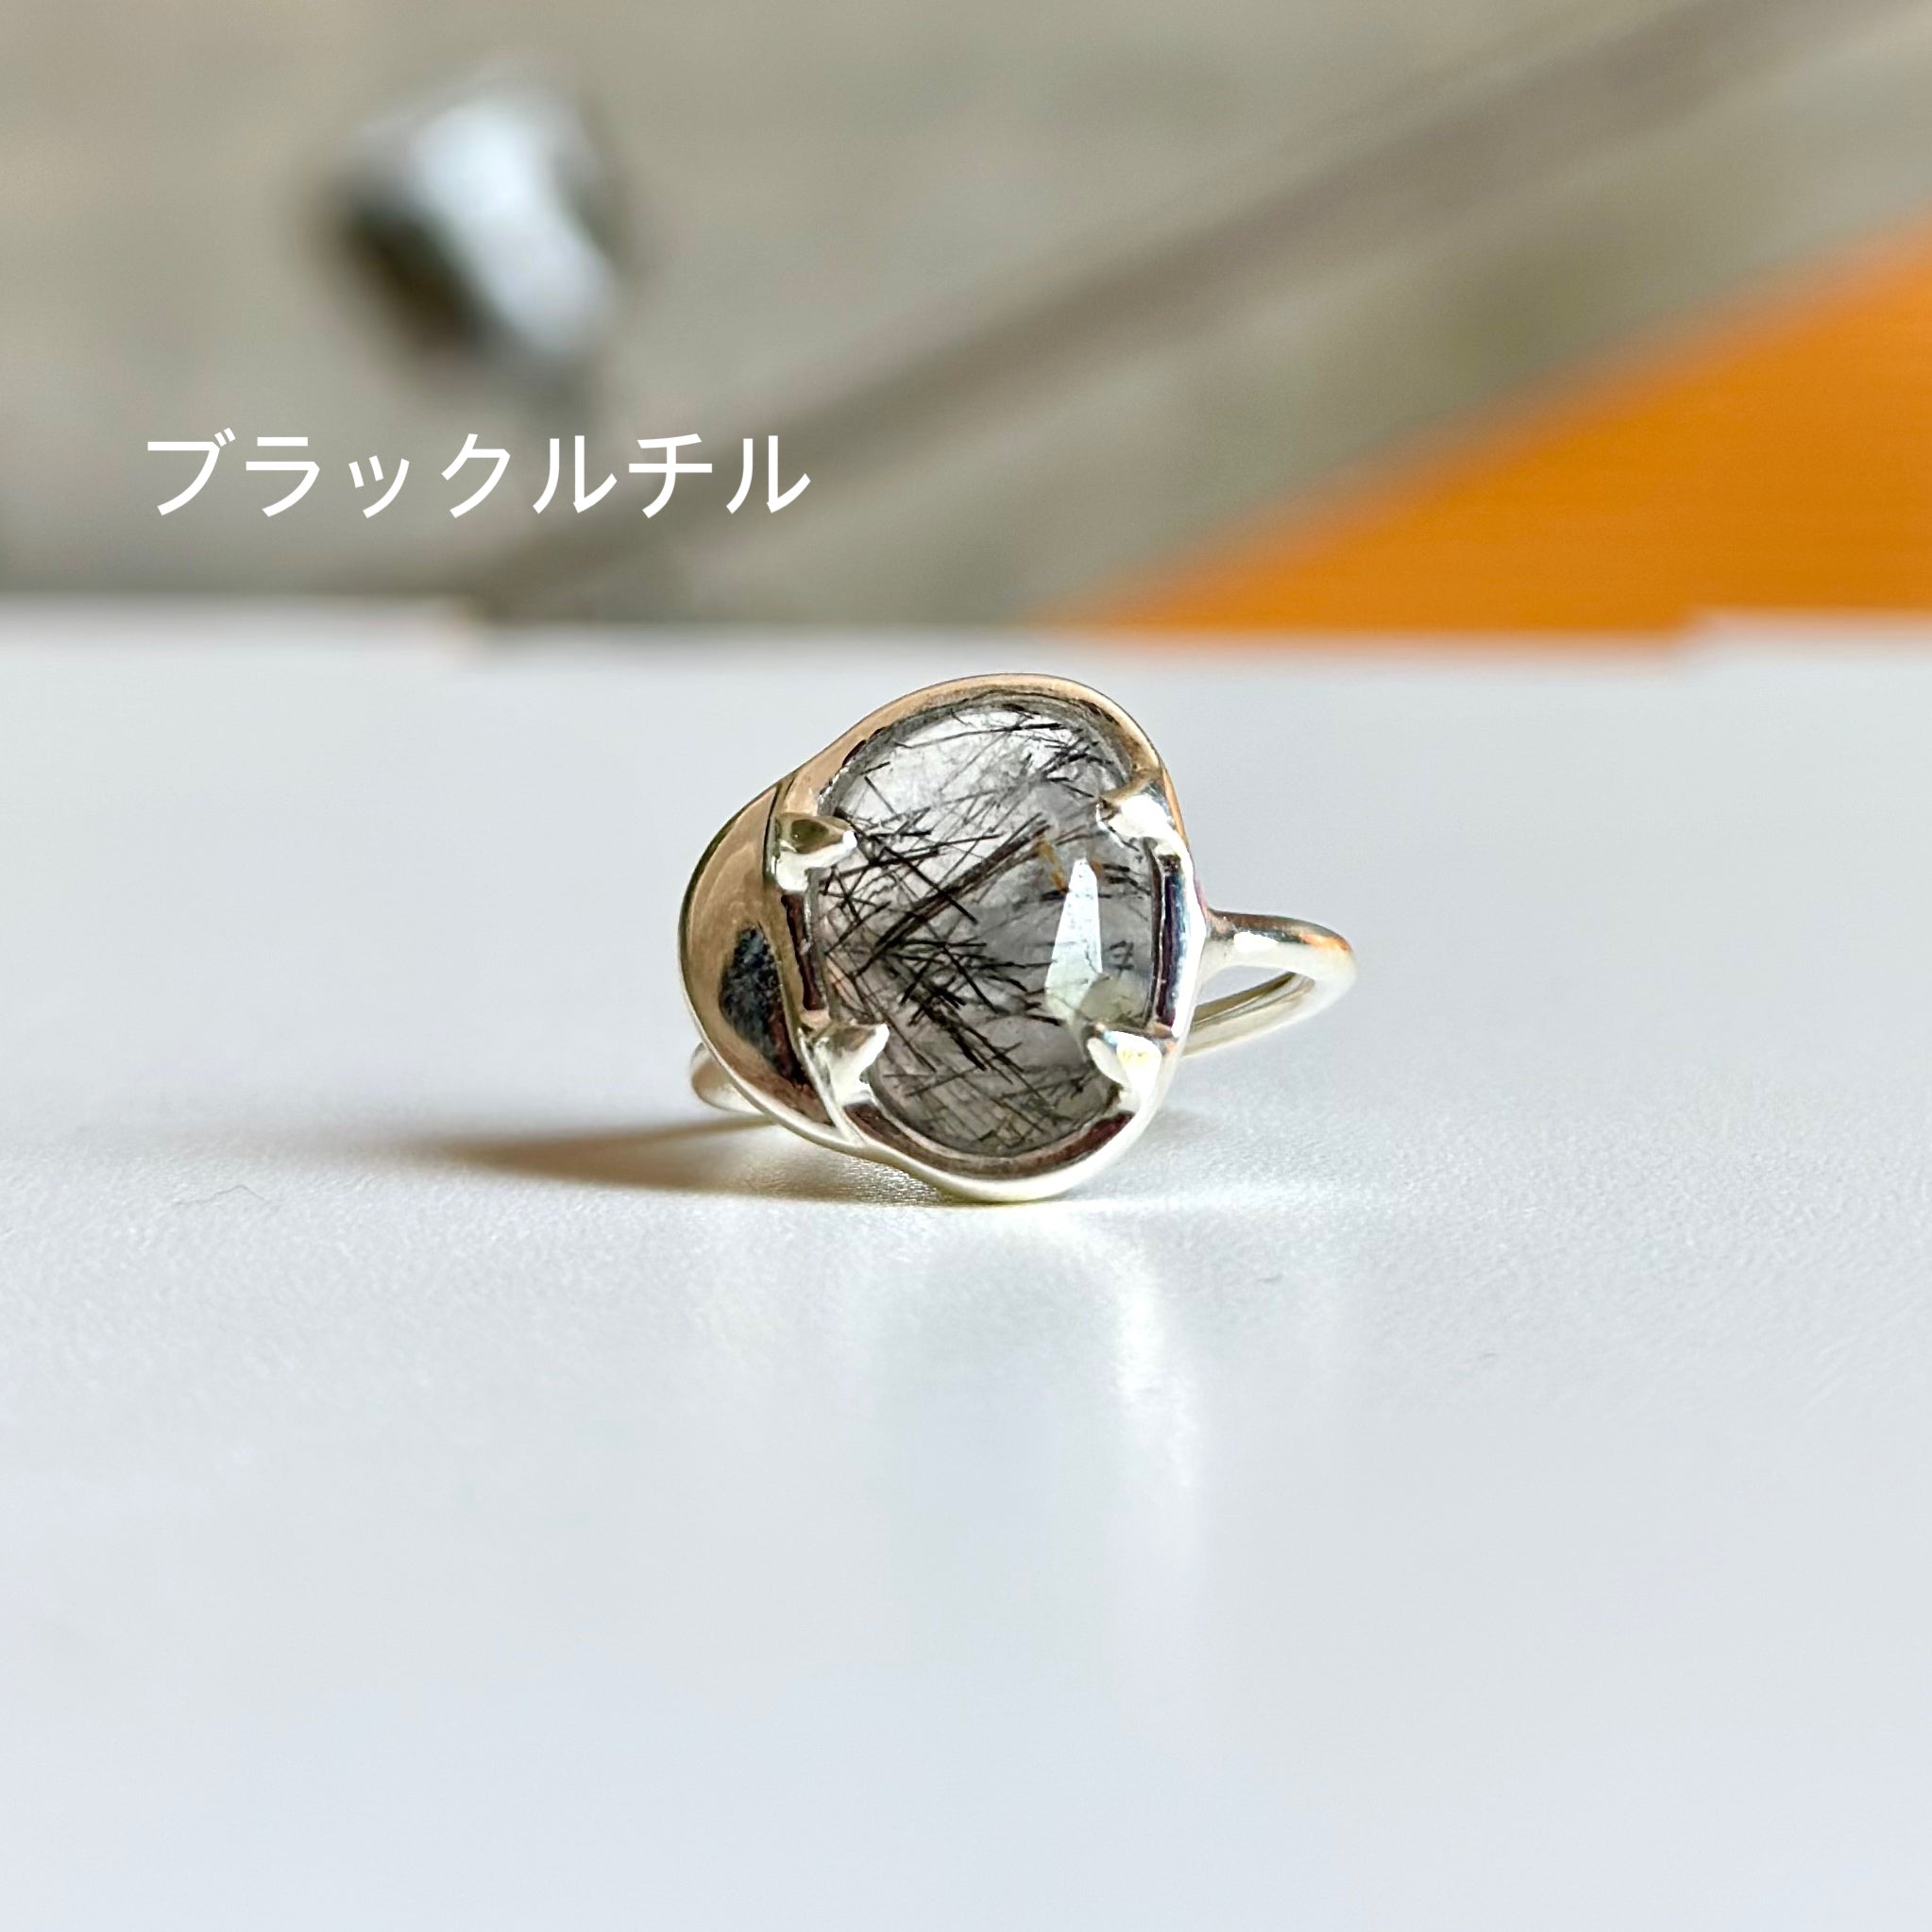 Silver925 design ring 18 – Biju mam